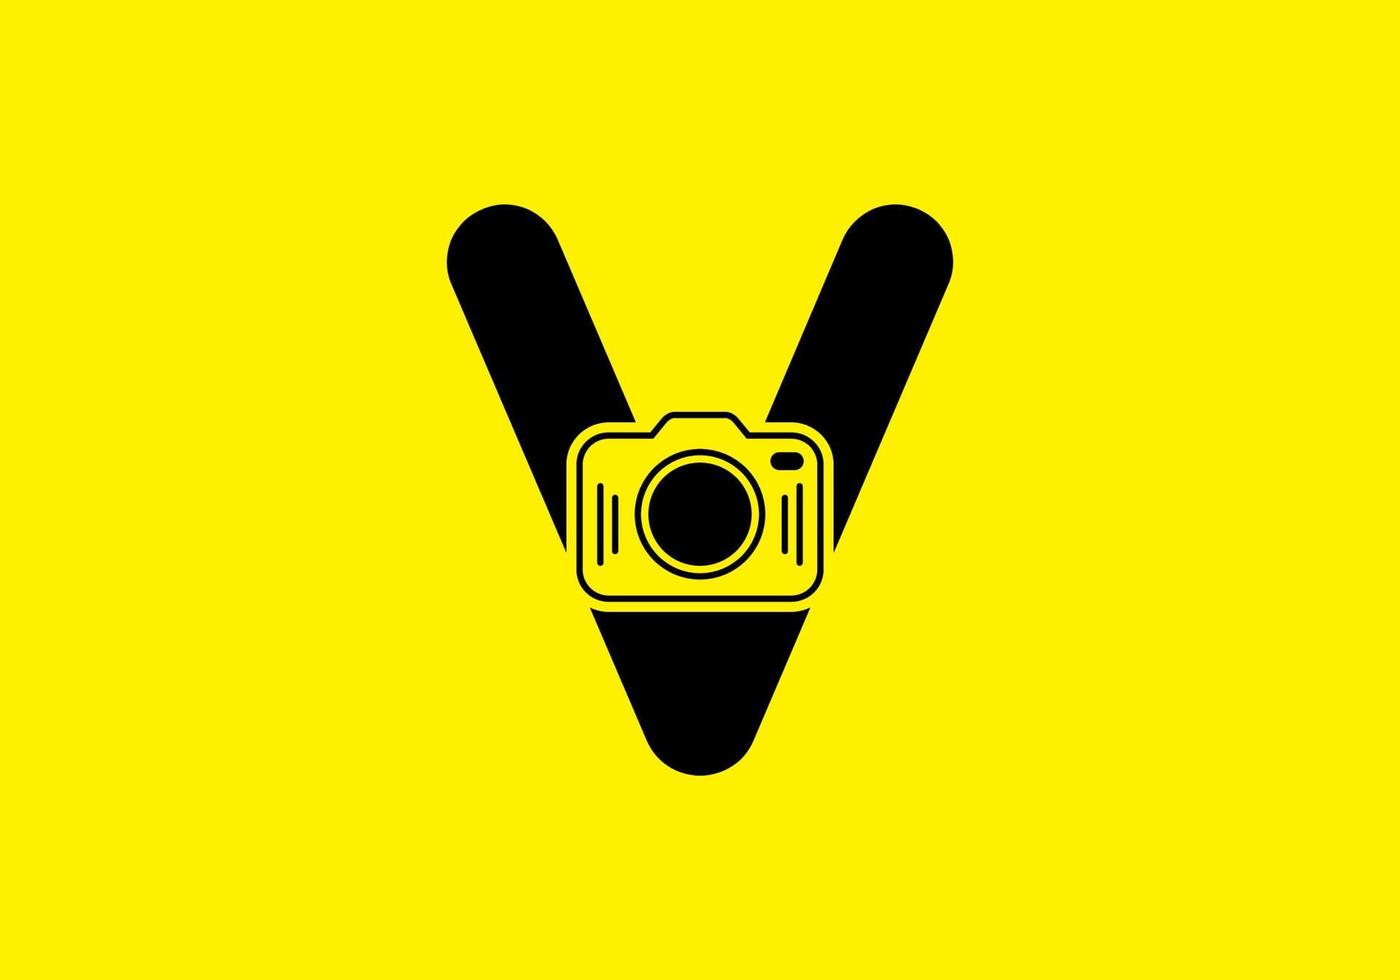 zwart geel van de eerste v letter met camera vector